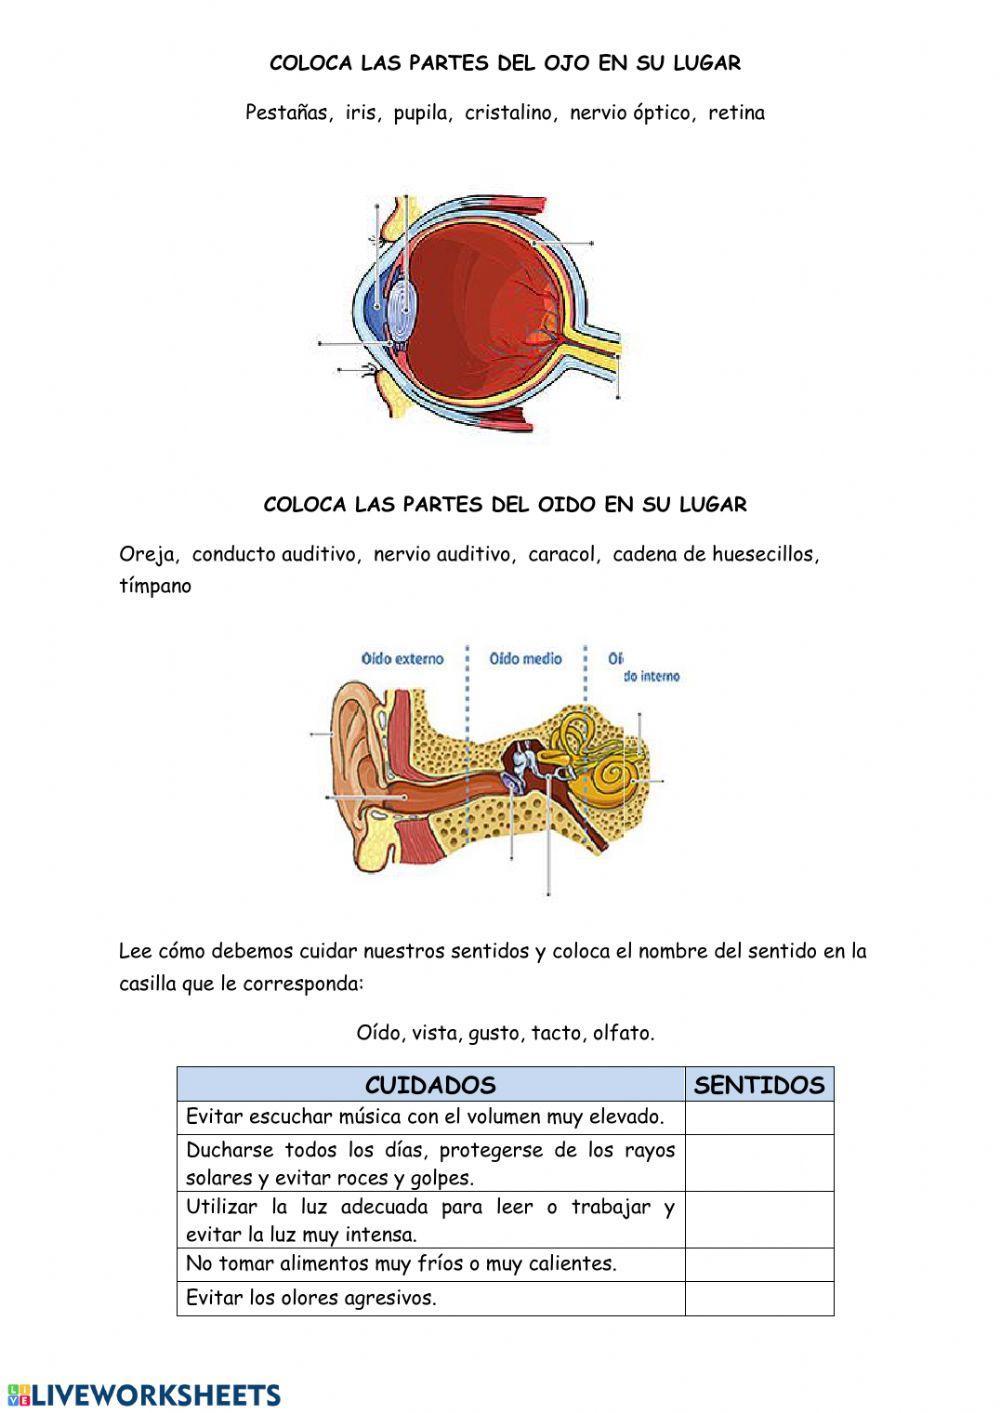 Partes del ojo y del oído